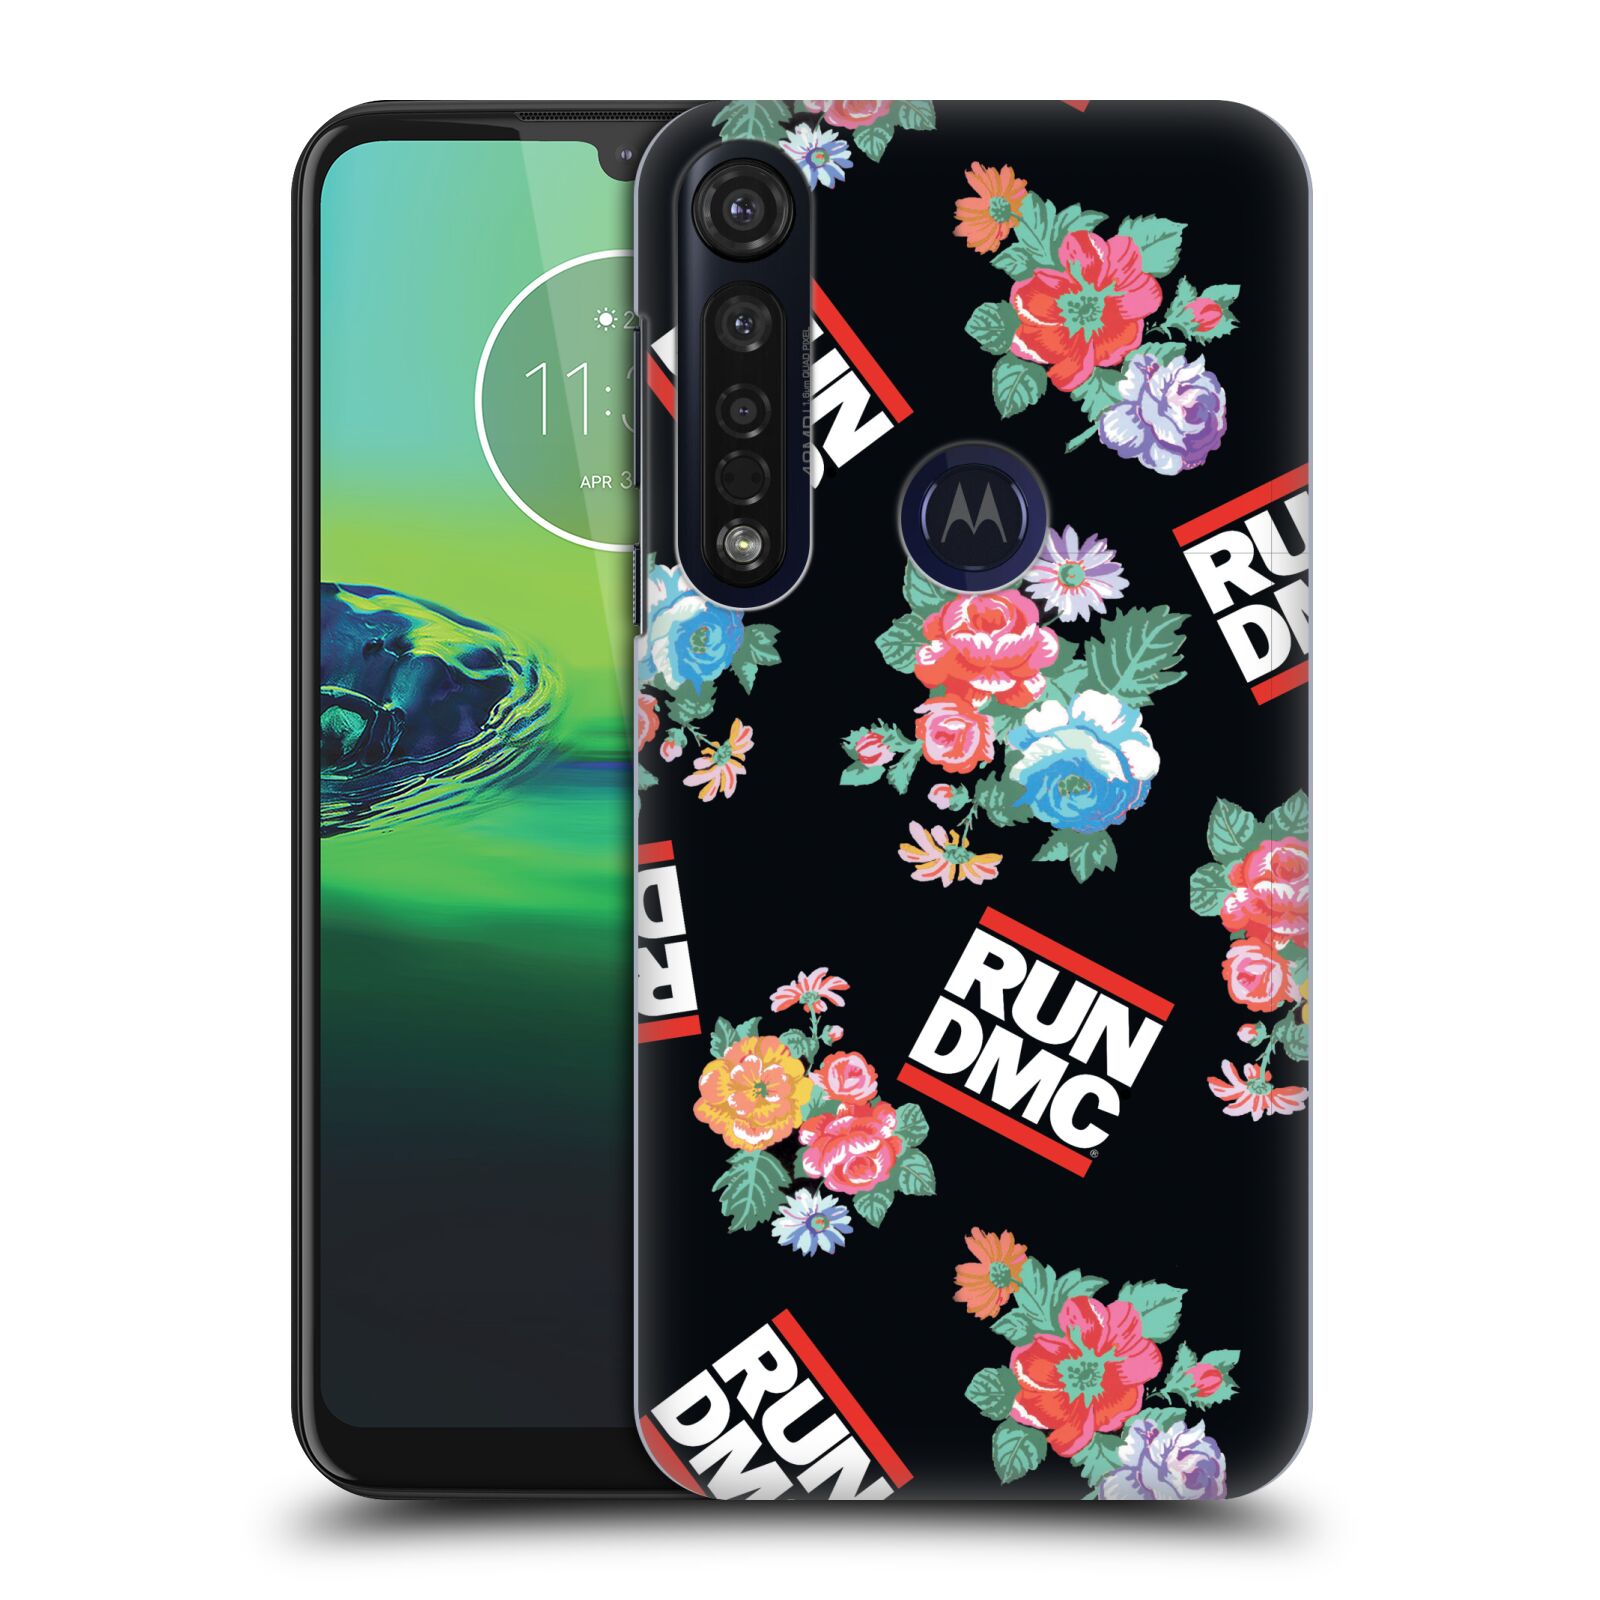 Pouzdro na mobil Motorola Moto G8 PLUS - HEAD CASE - rapová kapela Run DMC květiny černé pozadí